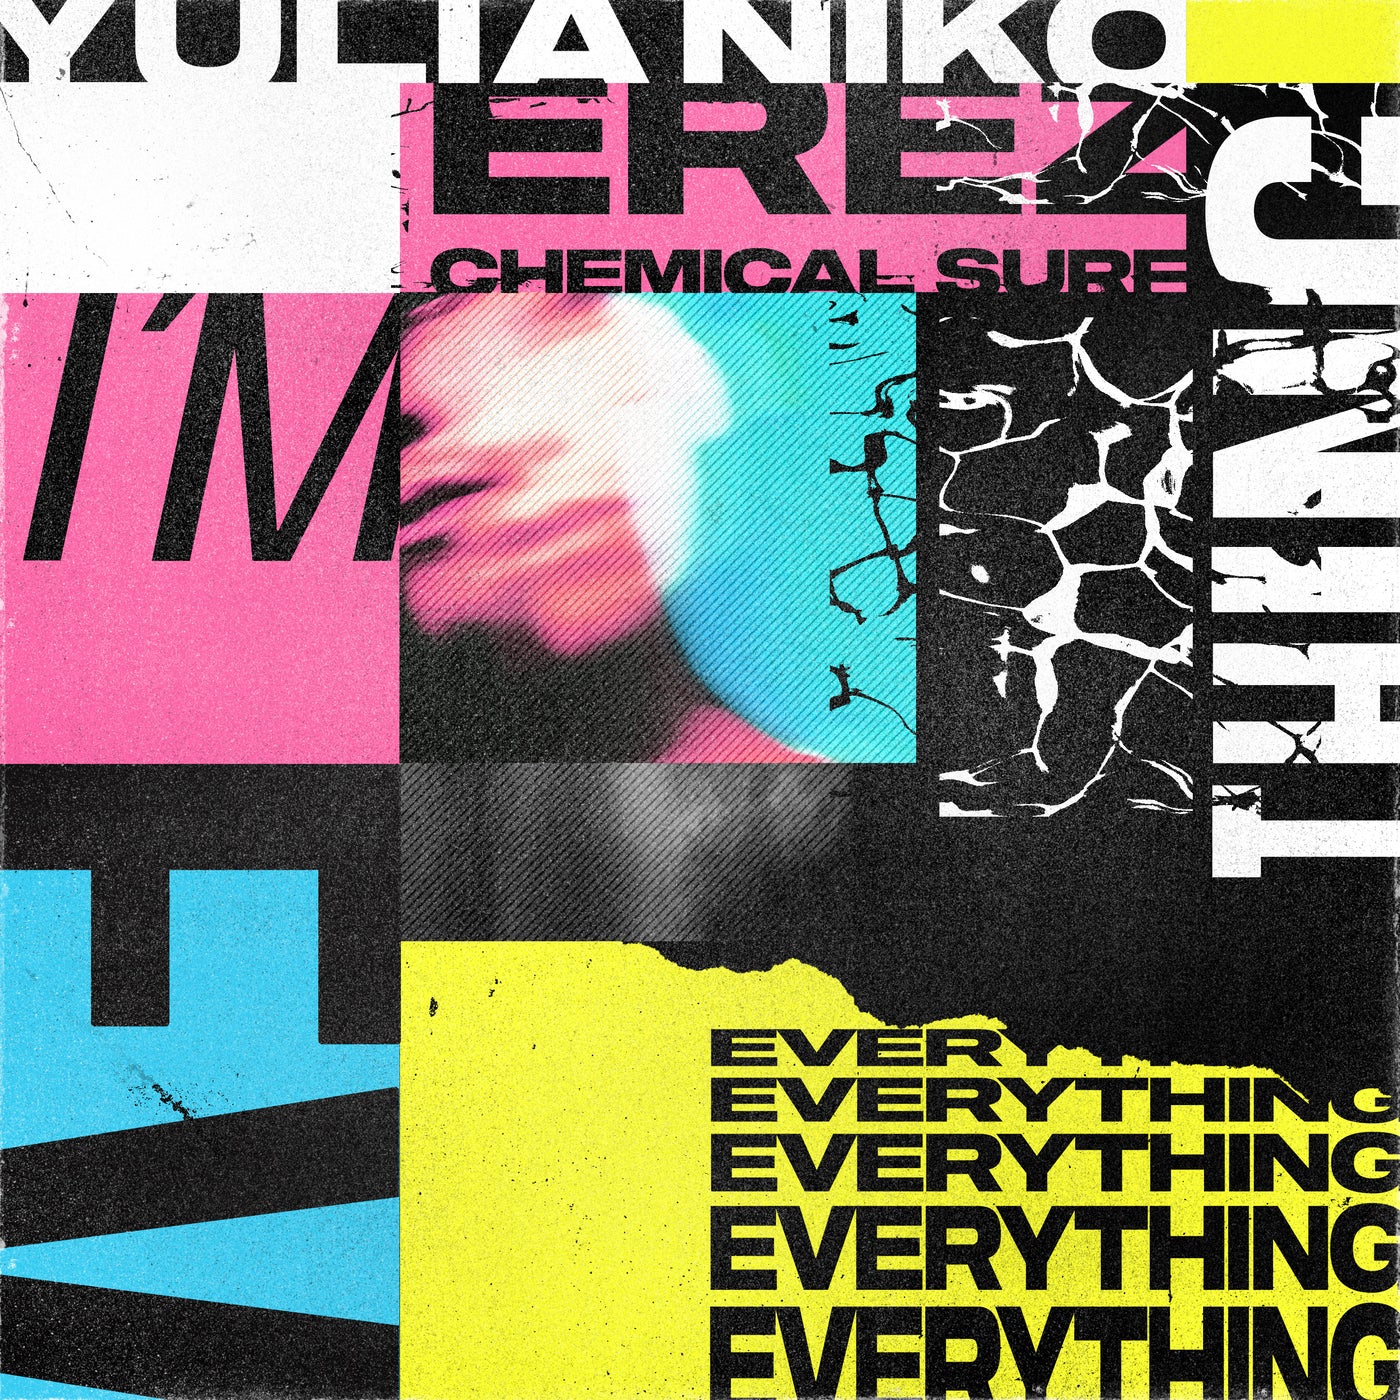 Erez, Yulia Niko - I'm Everything (Chemical Surf Extended Remix)